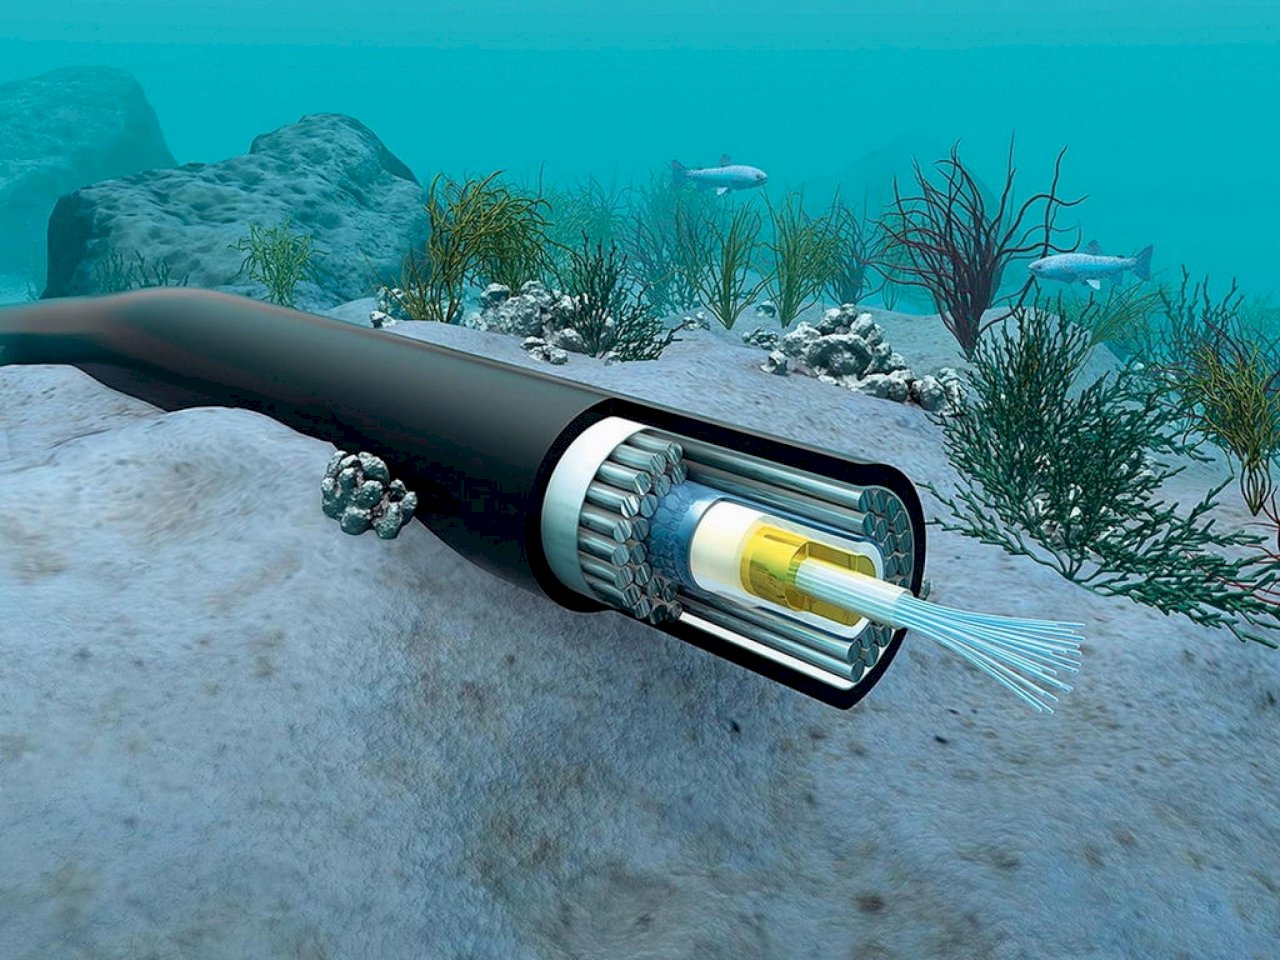 美中競爭加劇 美擬建新海底電纜連接太平洋島國